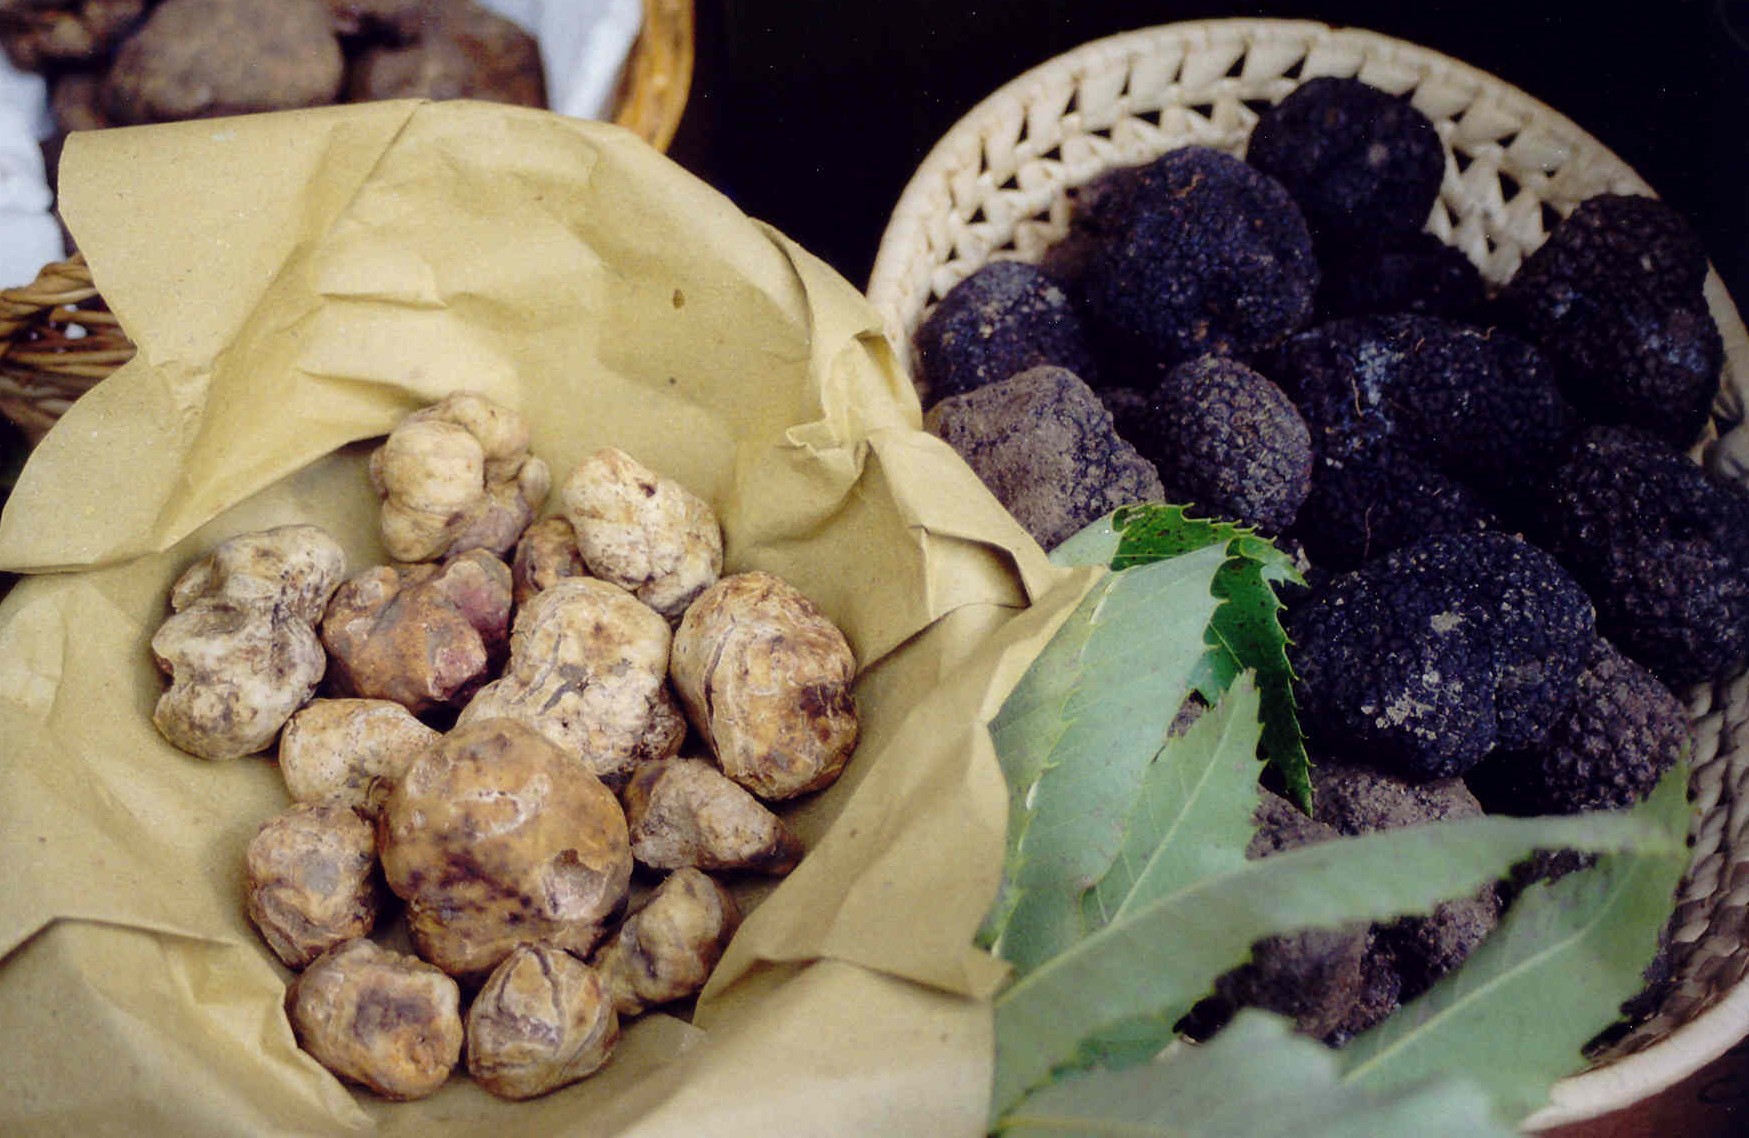 The truffle of San Miniato